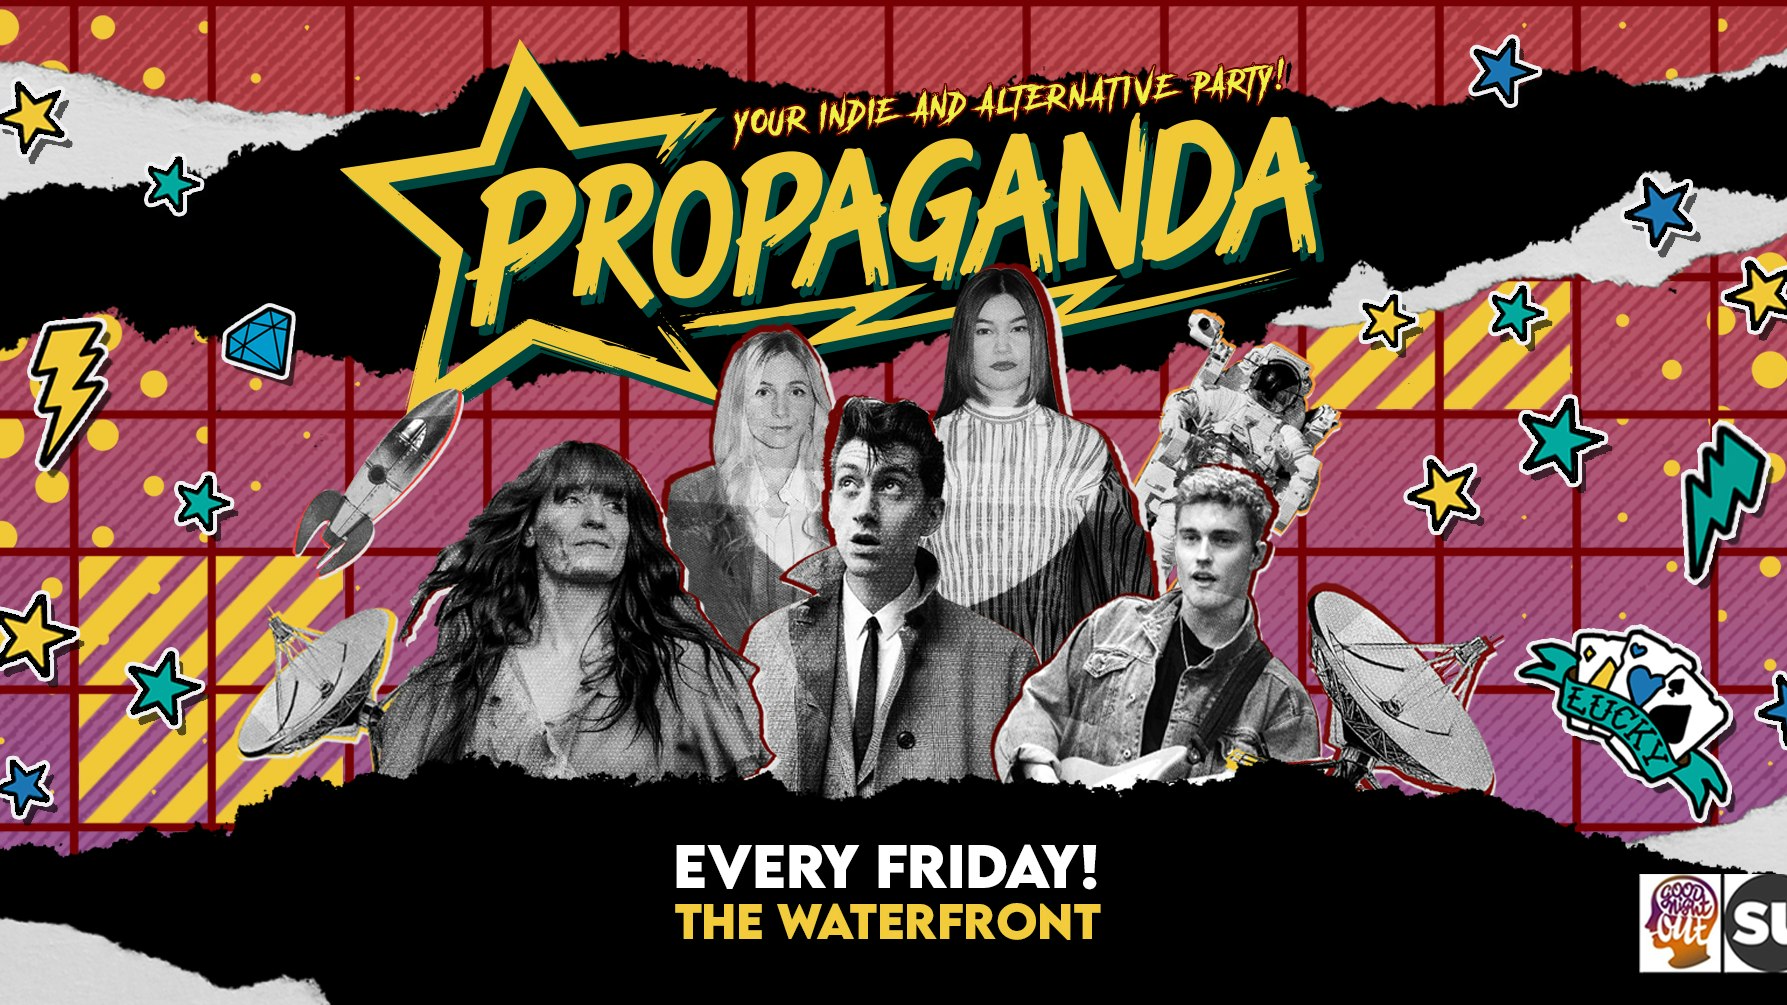 TONIGHT! Propaganda Norwich at The Waterfront!